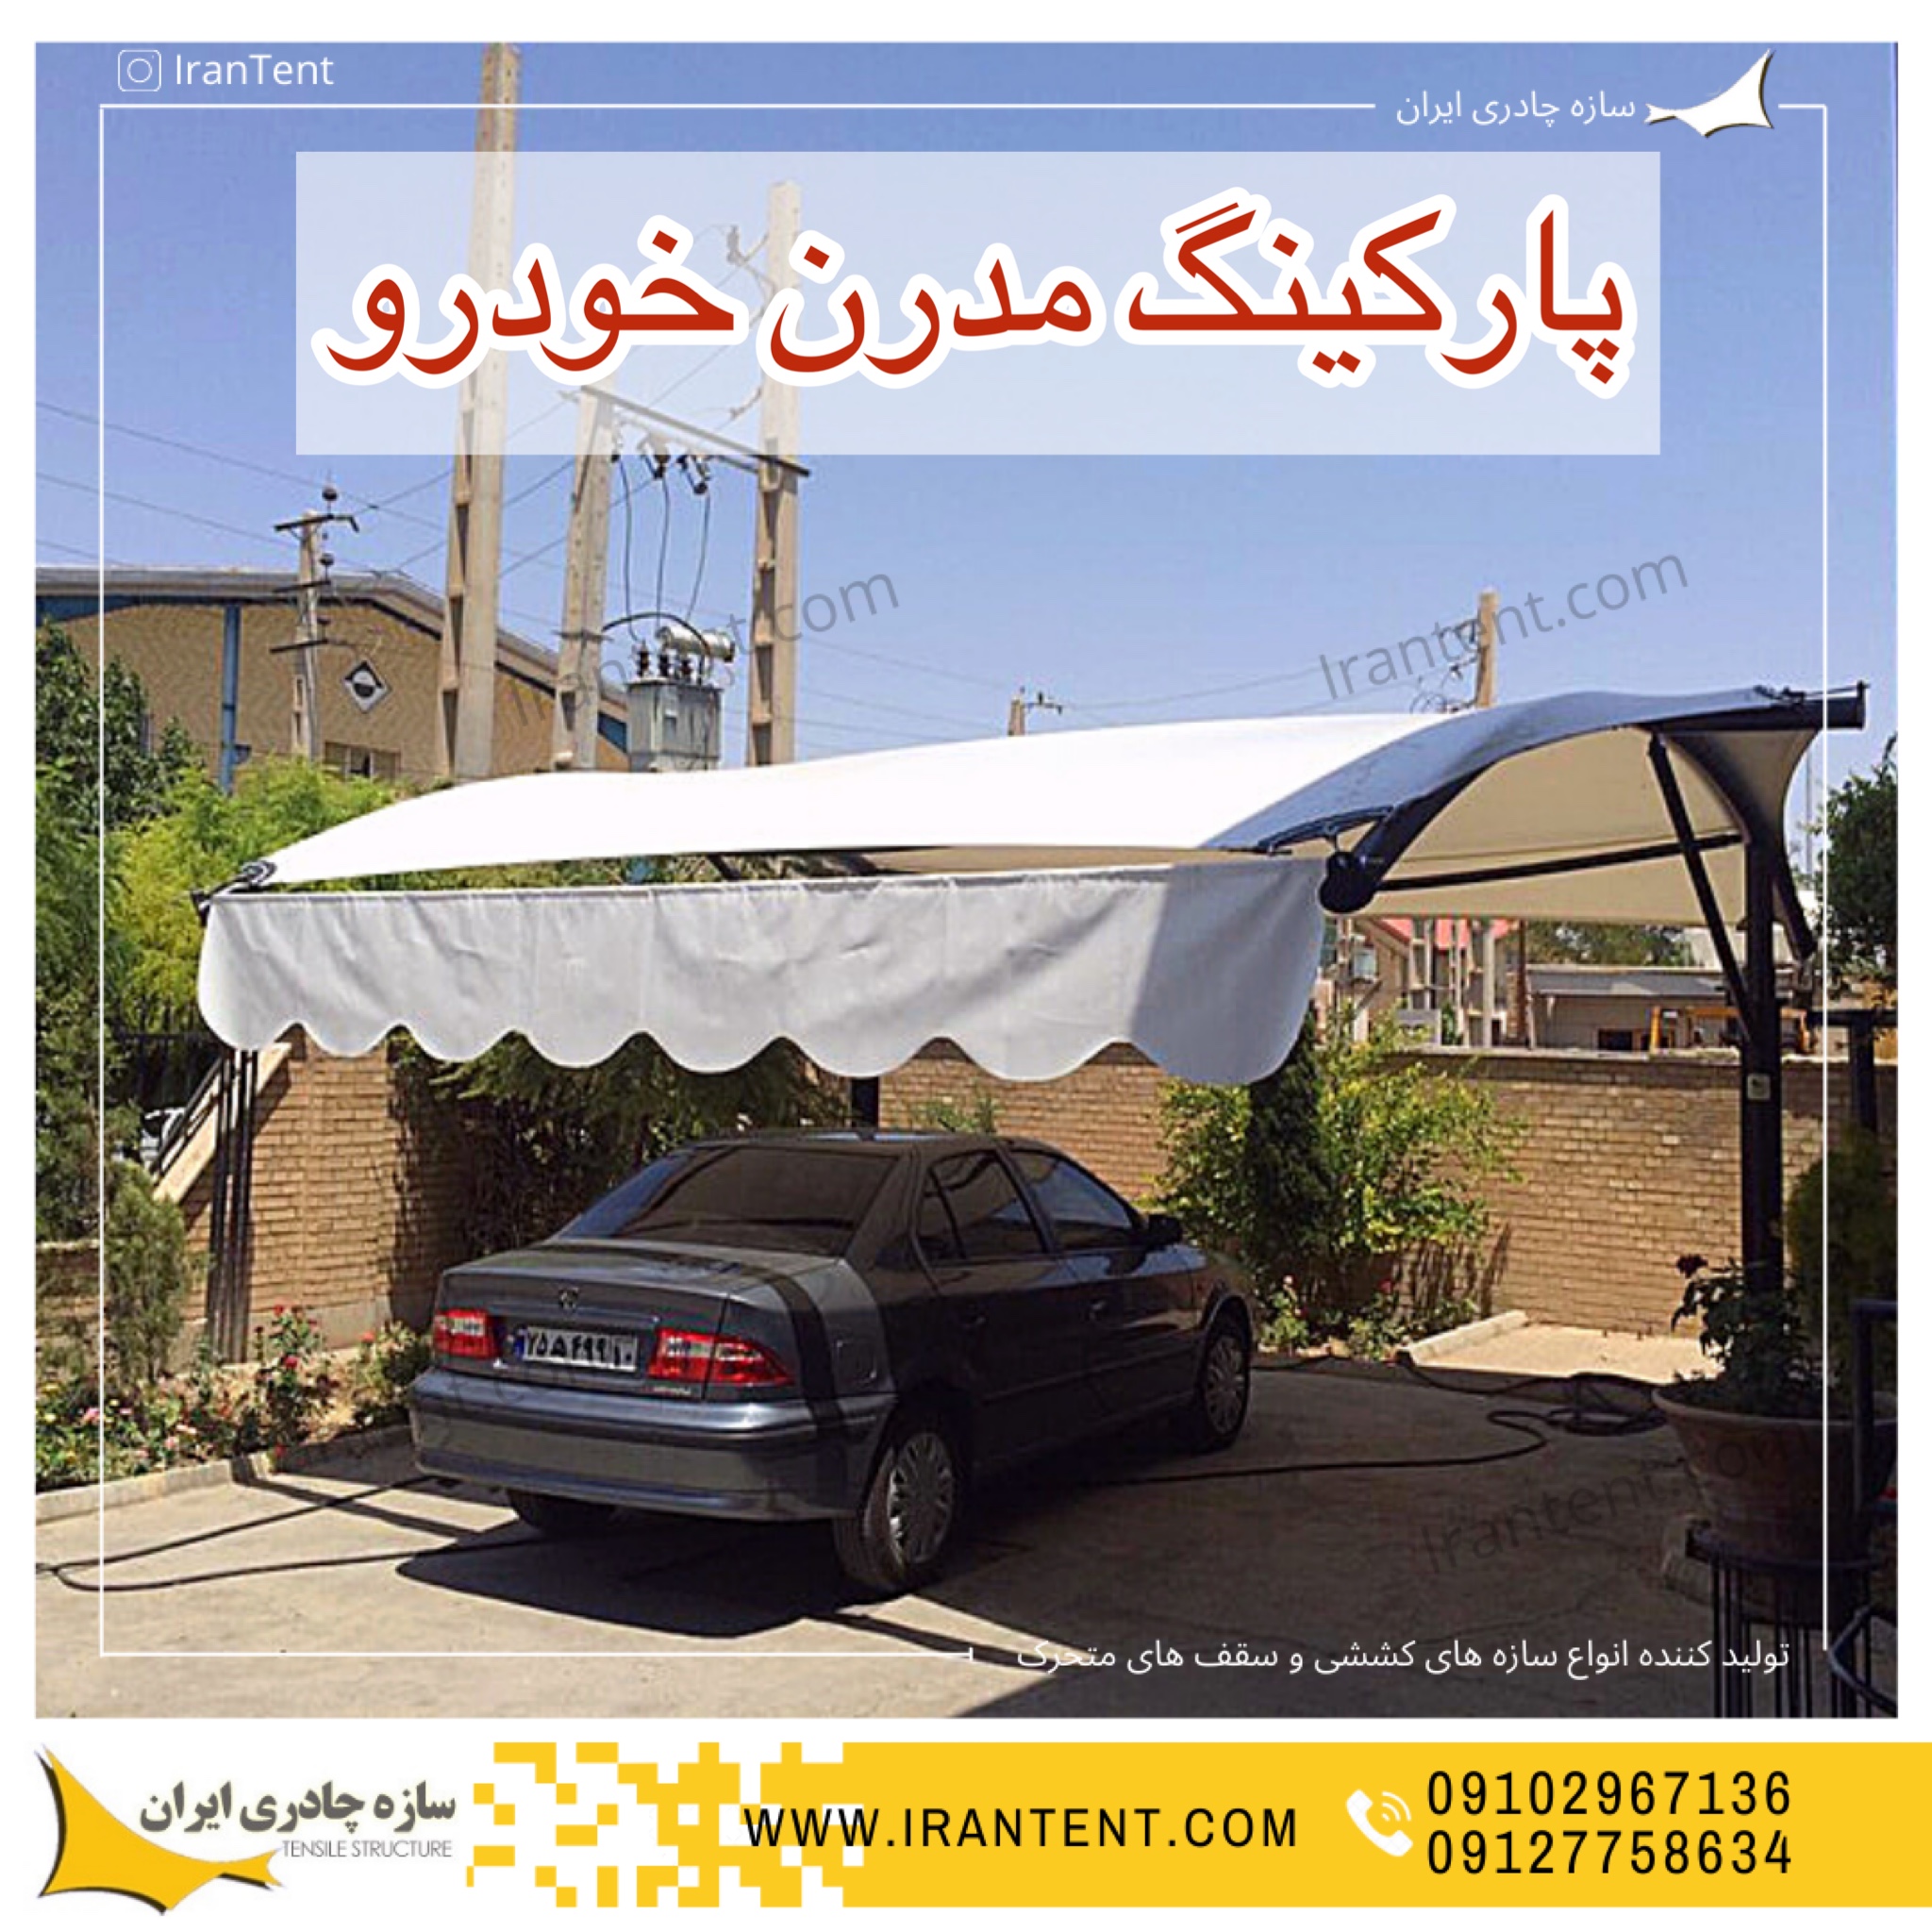 4D6985A4 22C4 4036 A4EE 2186B6685FEE - درباره سازه چادری ایران